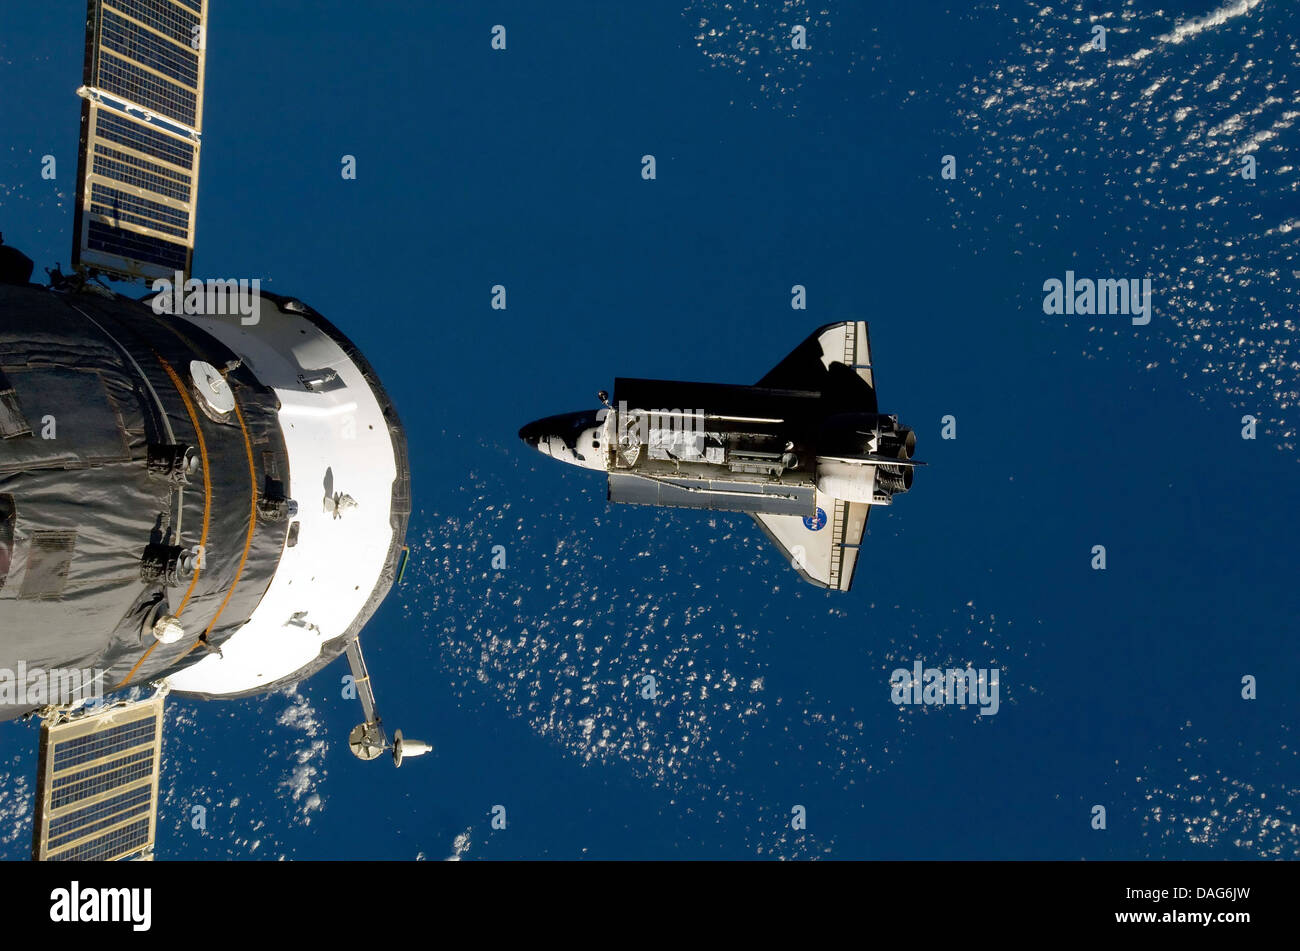 La stazione spaziale internazionale e lo space shuttle. Ottimizzato e la versione avanzata di un originale immagine della NASA Foto Stock